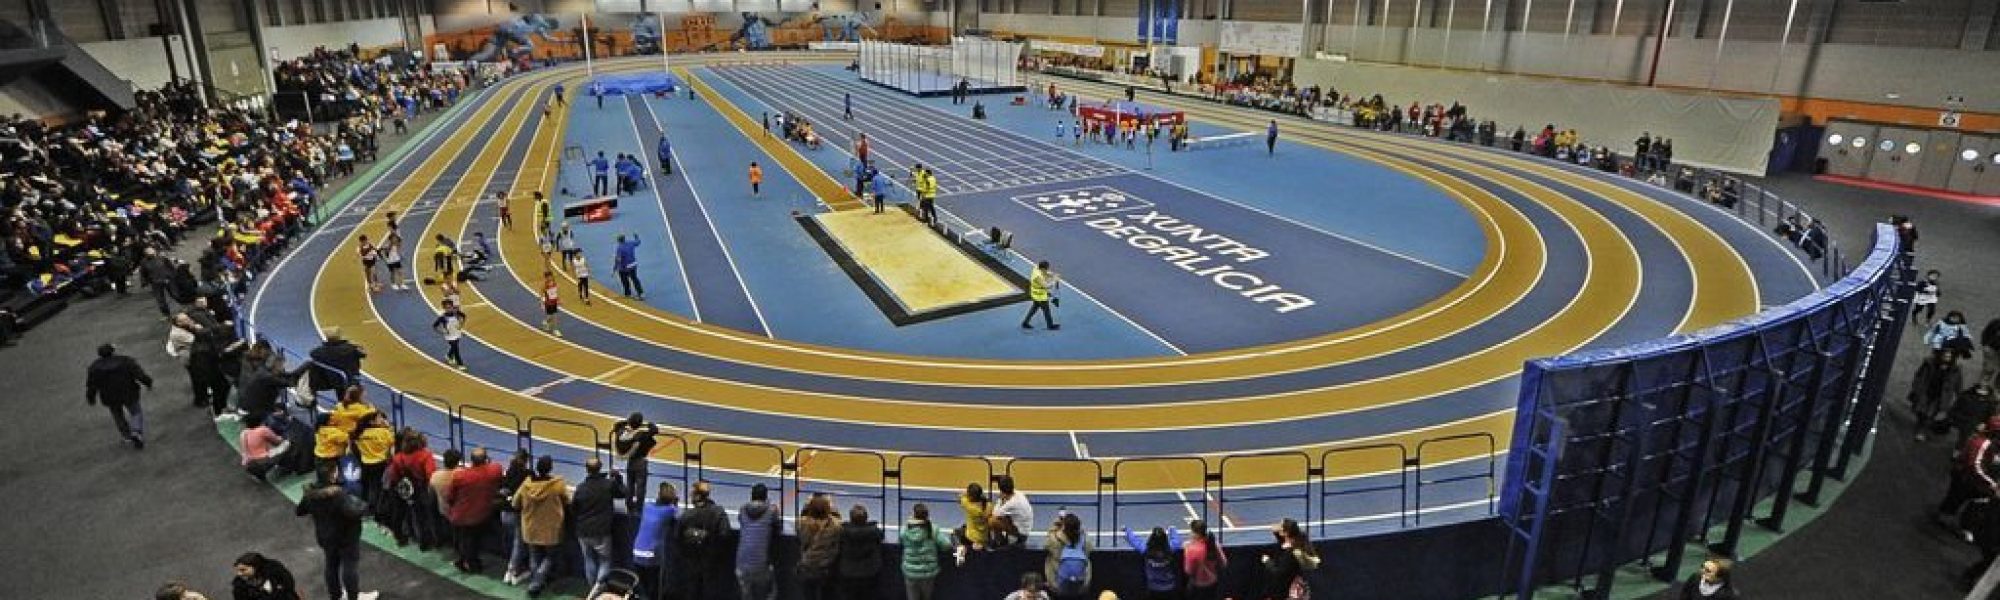 Ourense 16 /12/17.
Campeonato de inauguración de la nueva pista de atletismo indoor en Expourense.

Fotos: Martiño Pinal